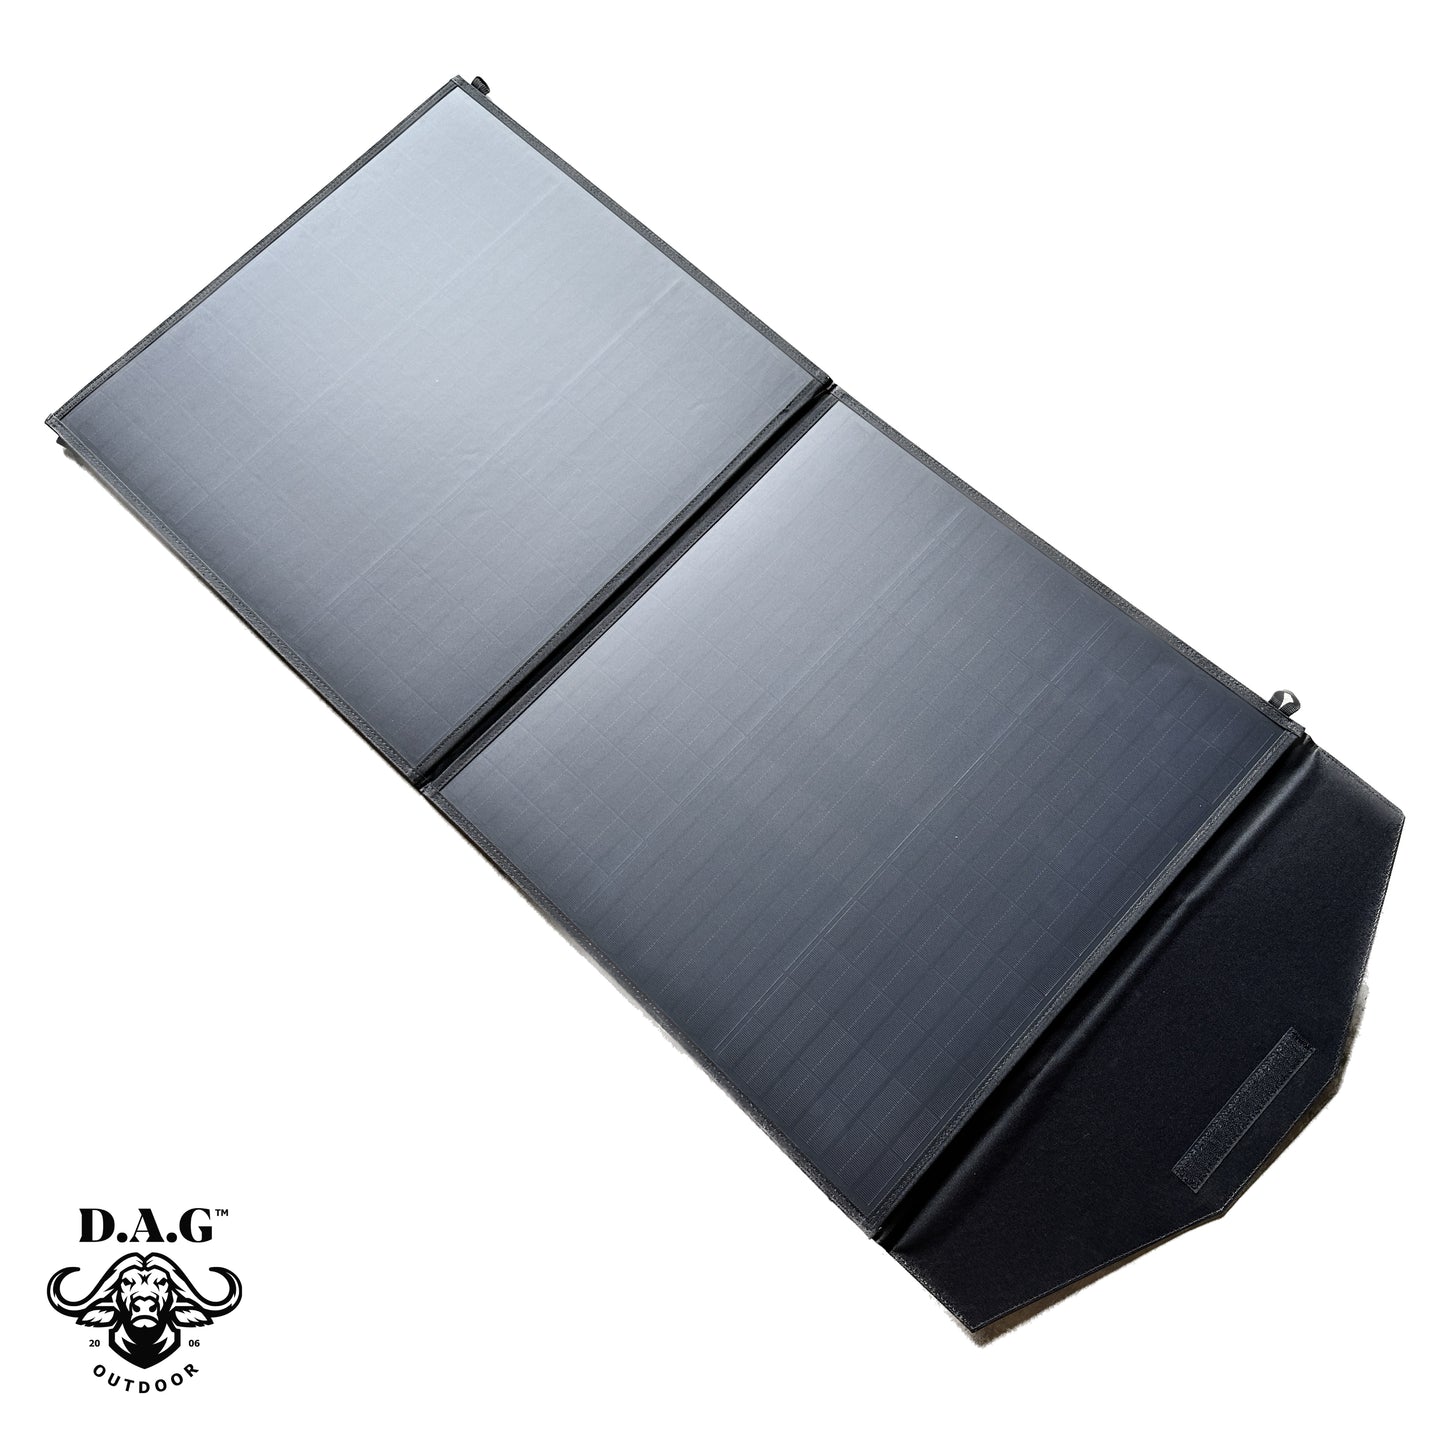 D.A.G Mono crystalline Silicon 100 W 18V Portable Camping Solar Panel